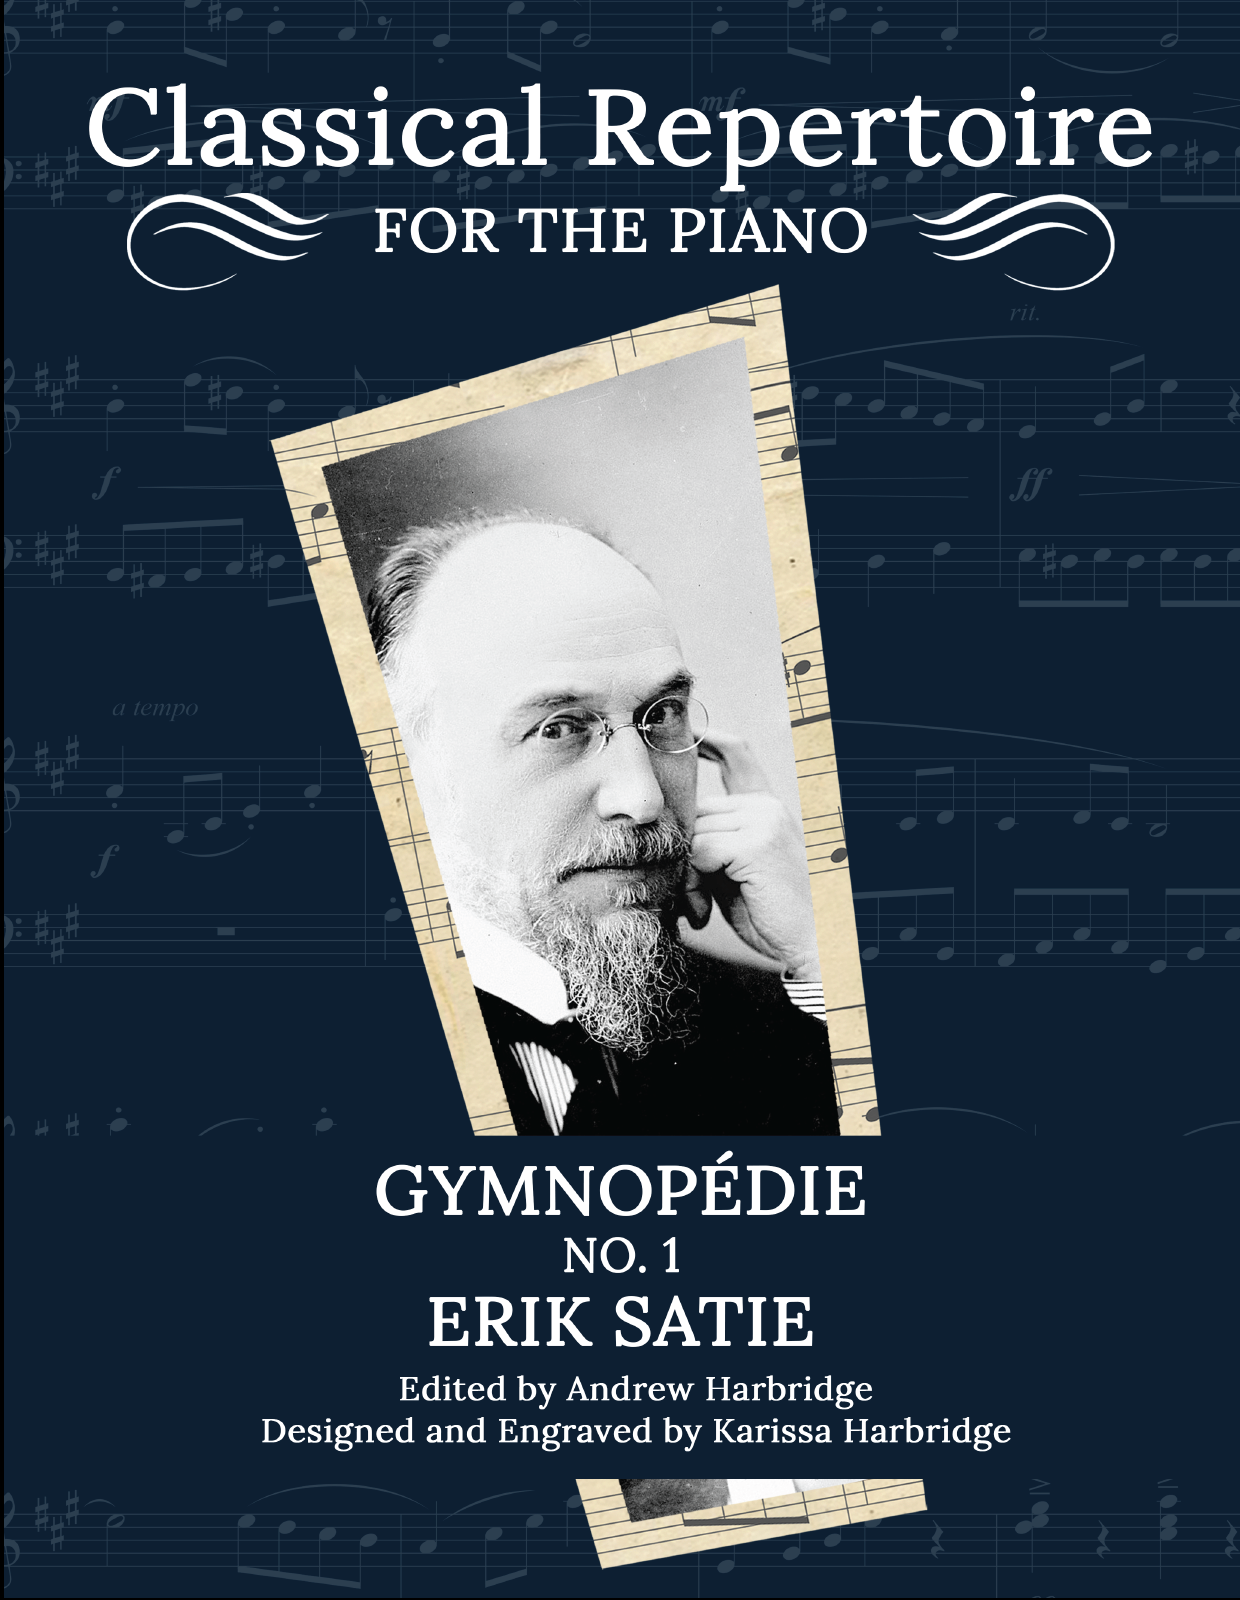 Gymnopédie No. 1 - Erik Satie (PDF Download)